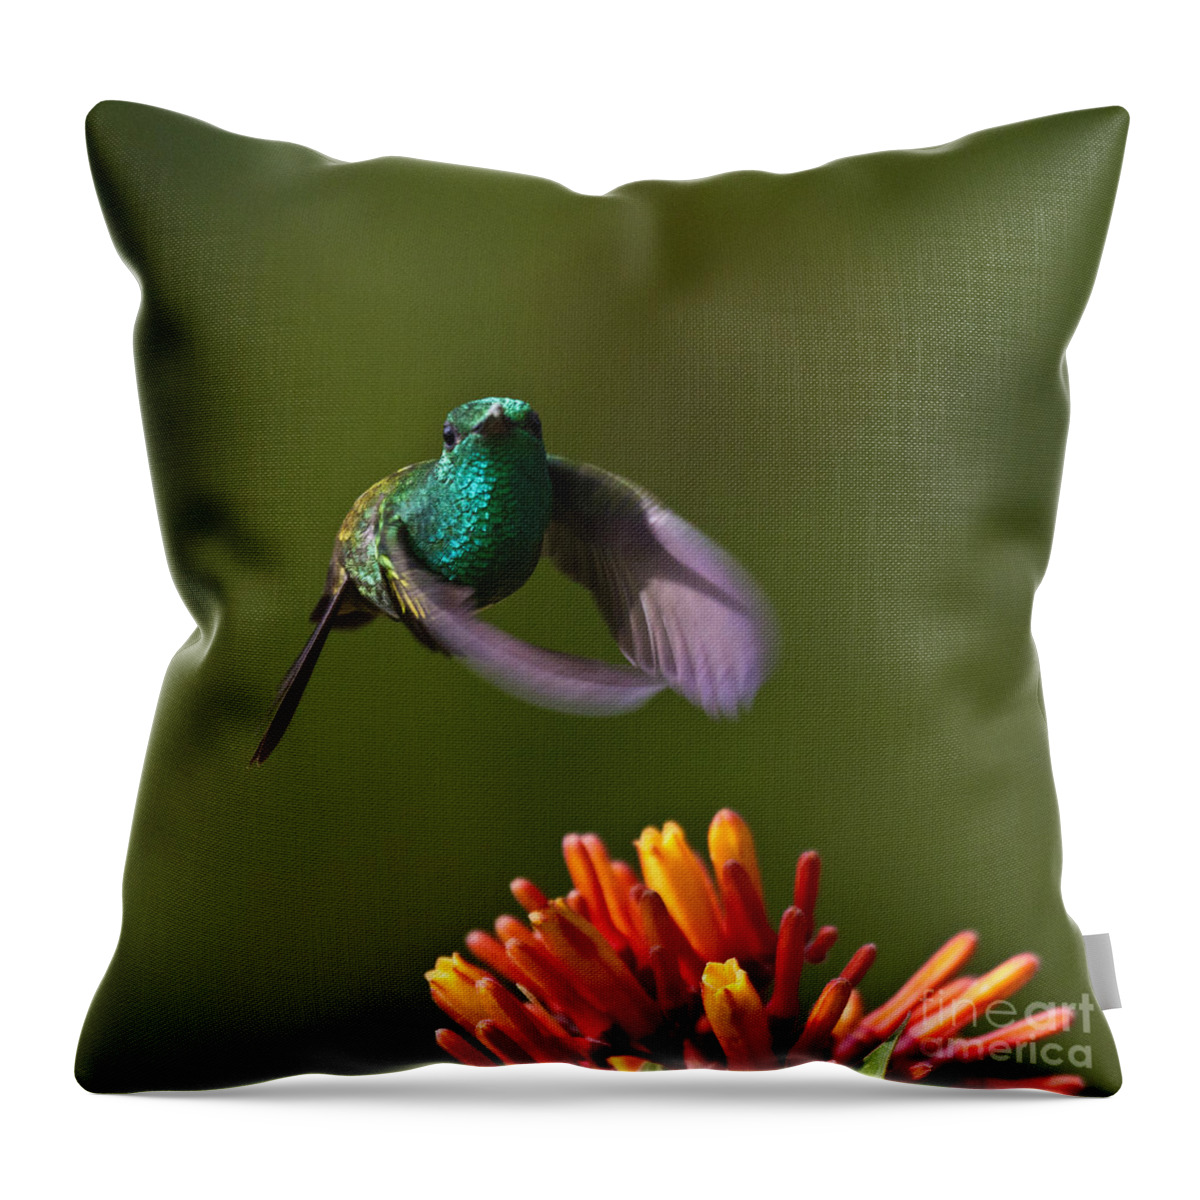 Bird Throw Pillow featuring the photograph Little Hedgehopper by Heiko Koehrer-Wagner